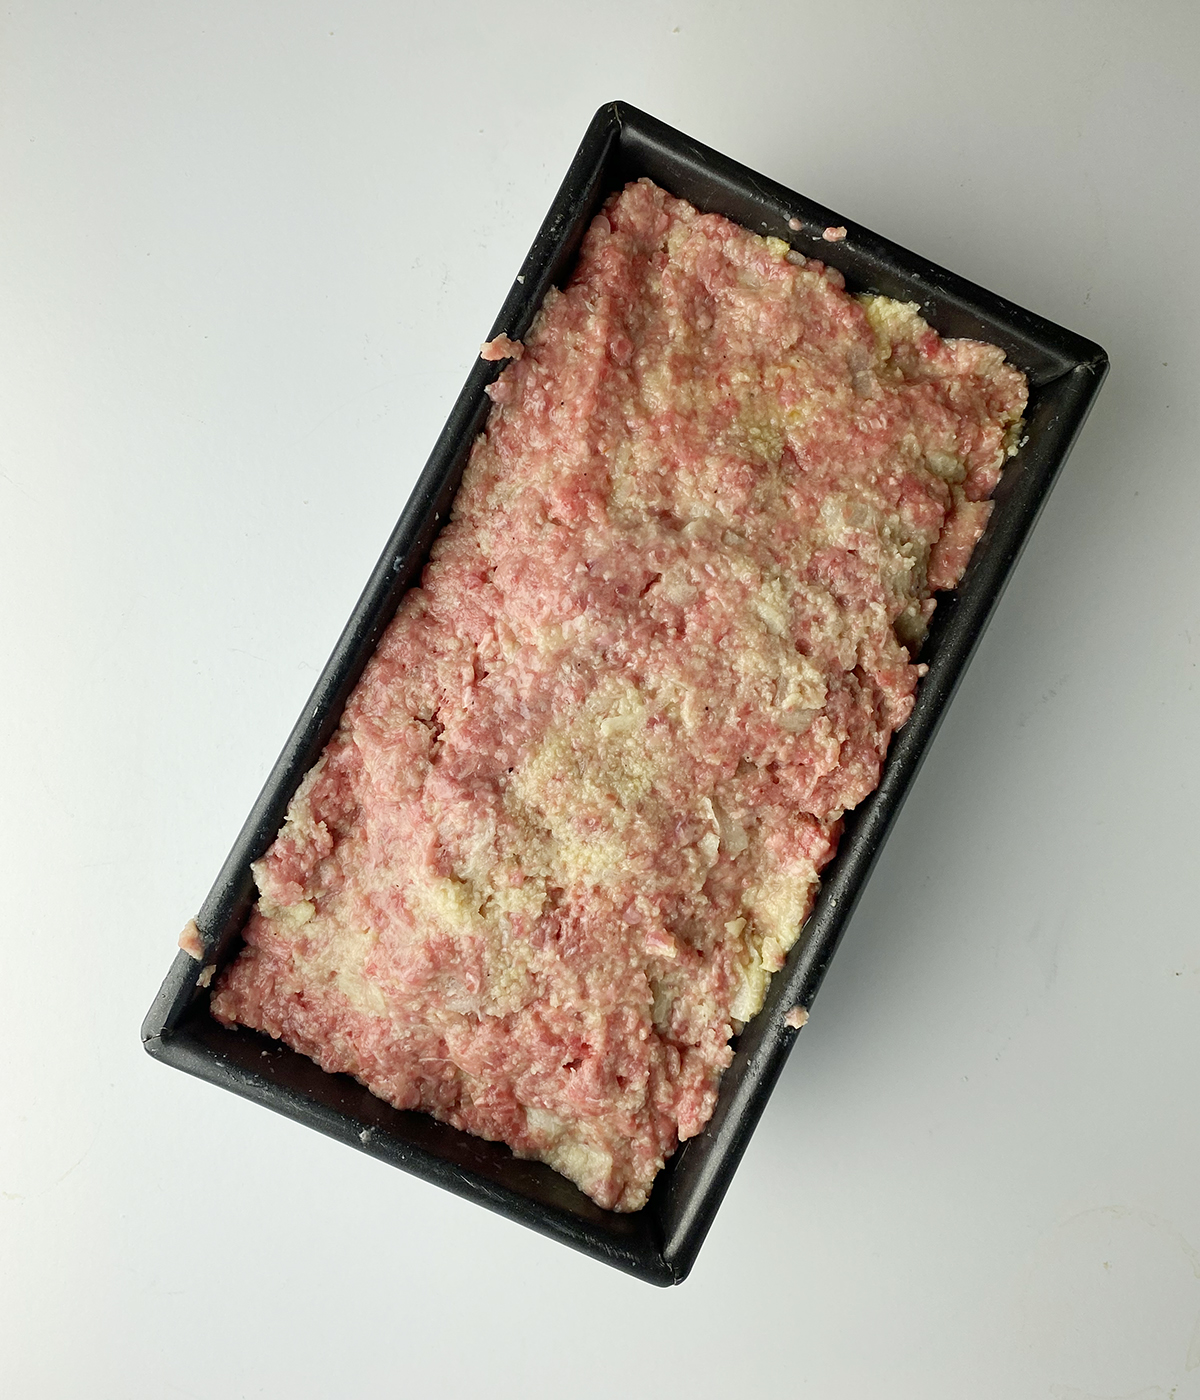 Uncooked brown sugar meatloaf in a loaf pan.